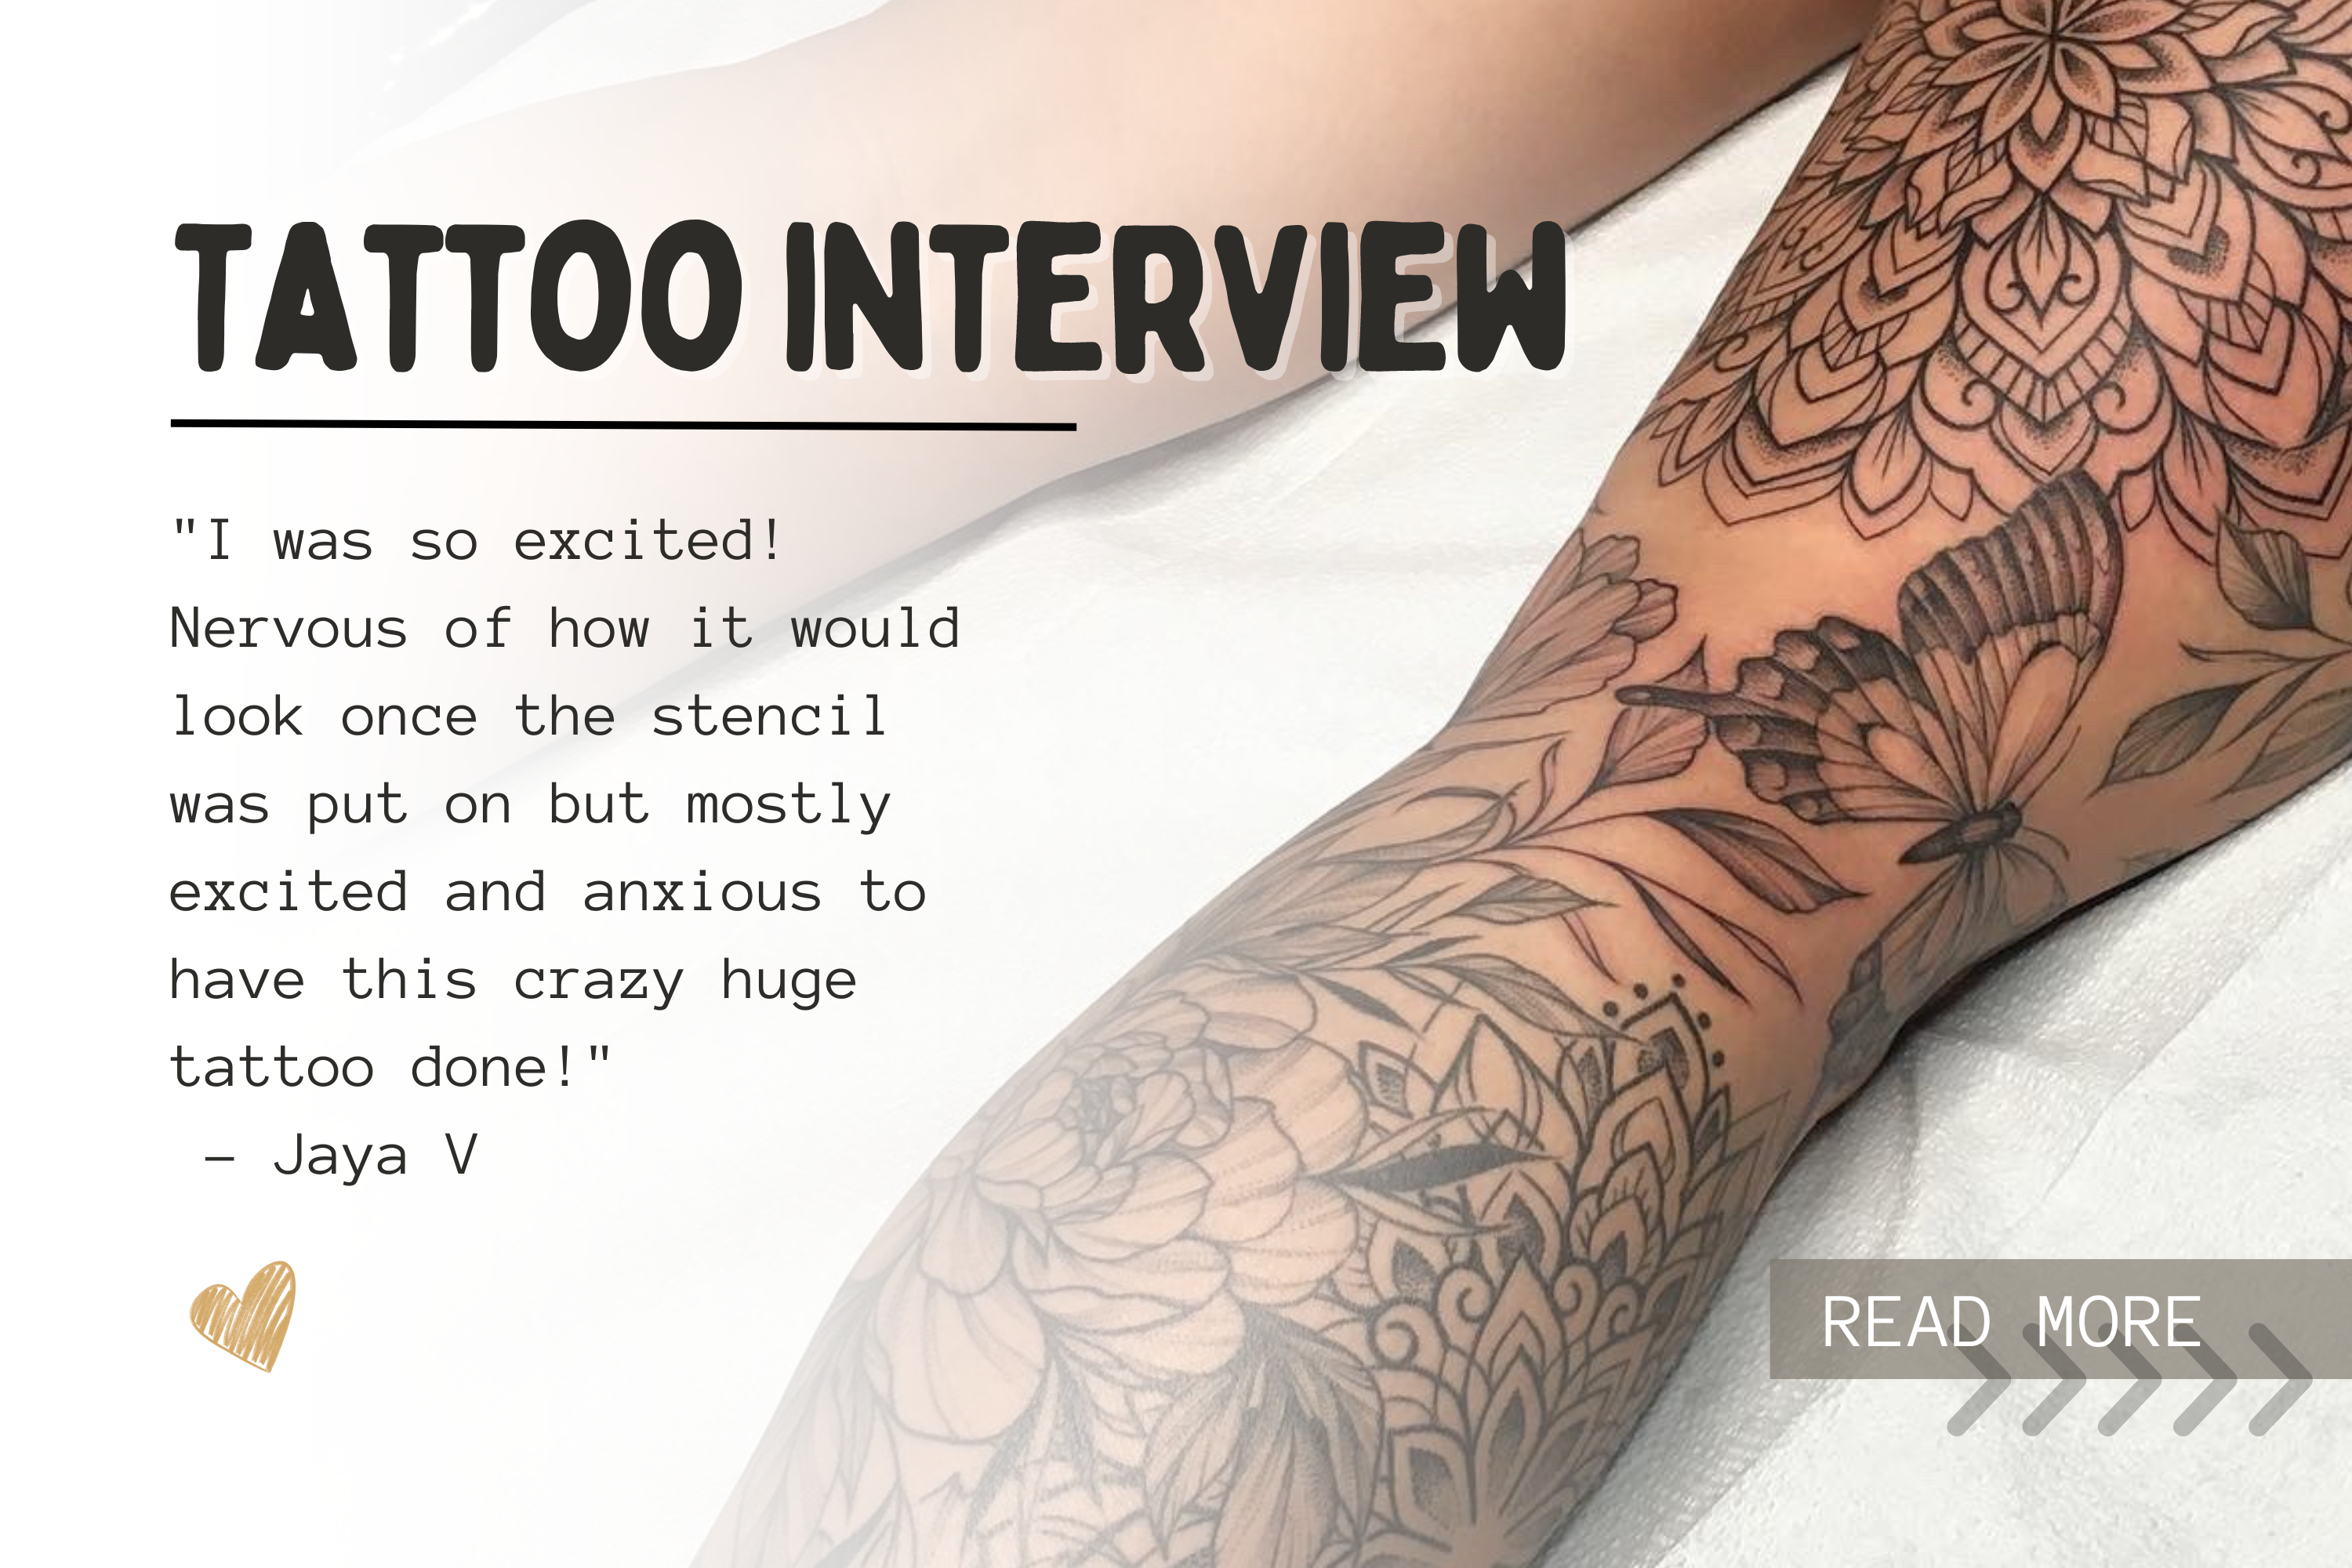 Full leg tattoo sleeve square tattoo idea | TattoosAI